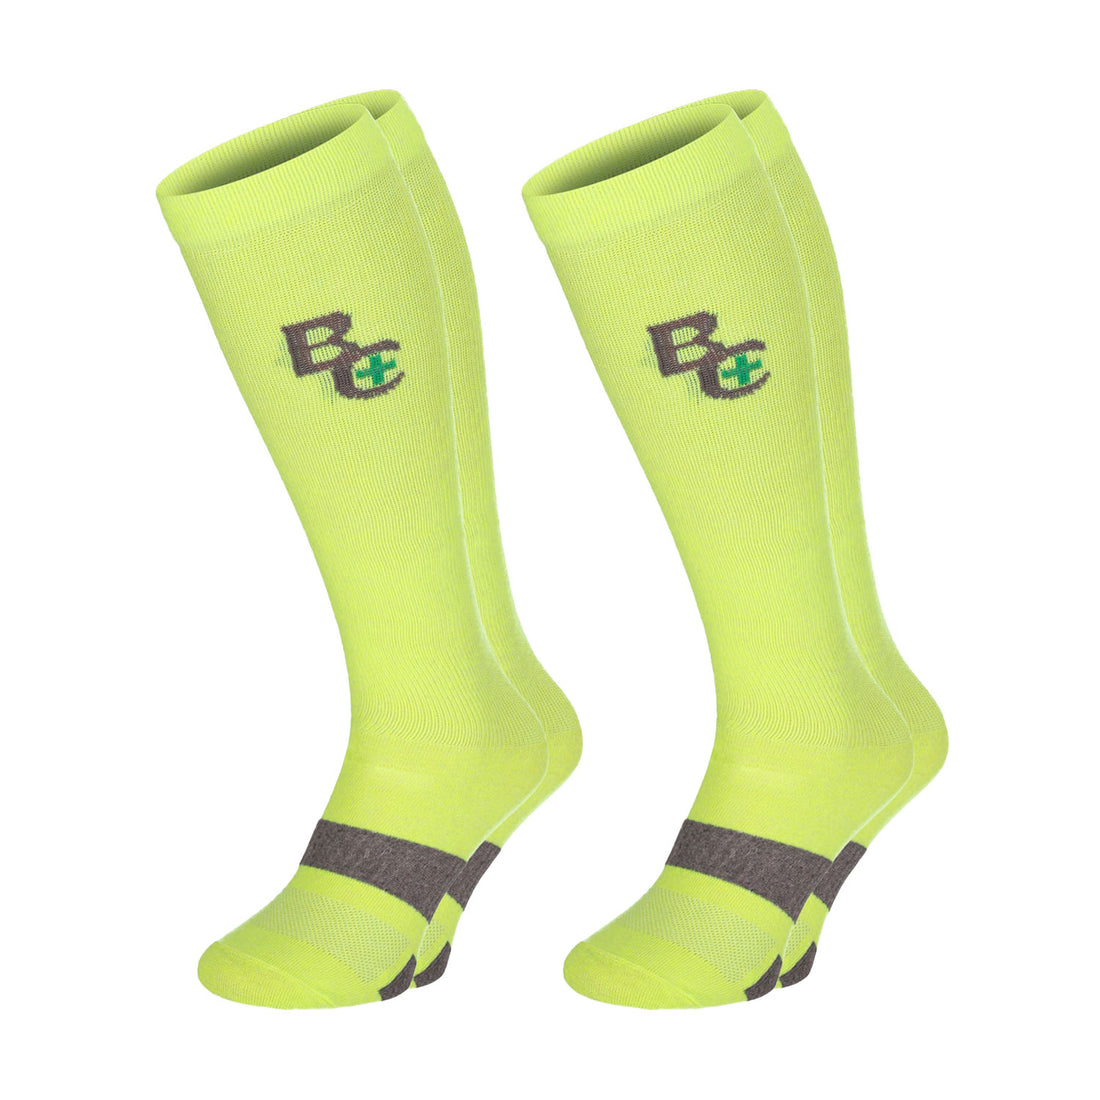 ChiliLifestyle Socken BestCare Compression Knie grün 2 Paar, Damen, Herren